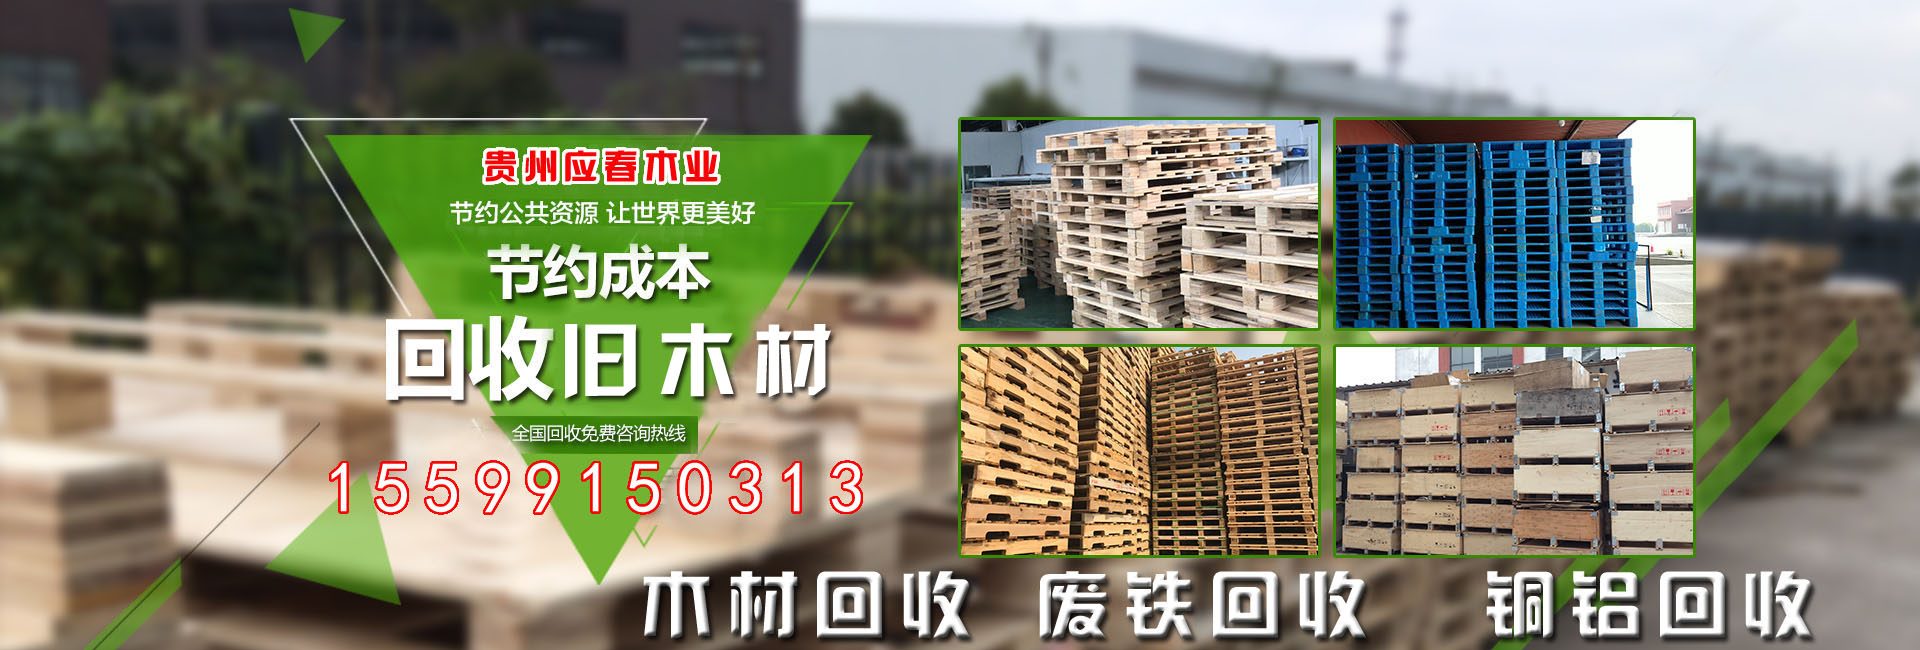 贵州应春木业有限公司